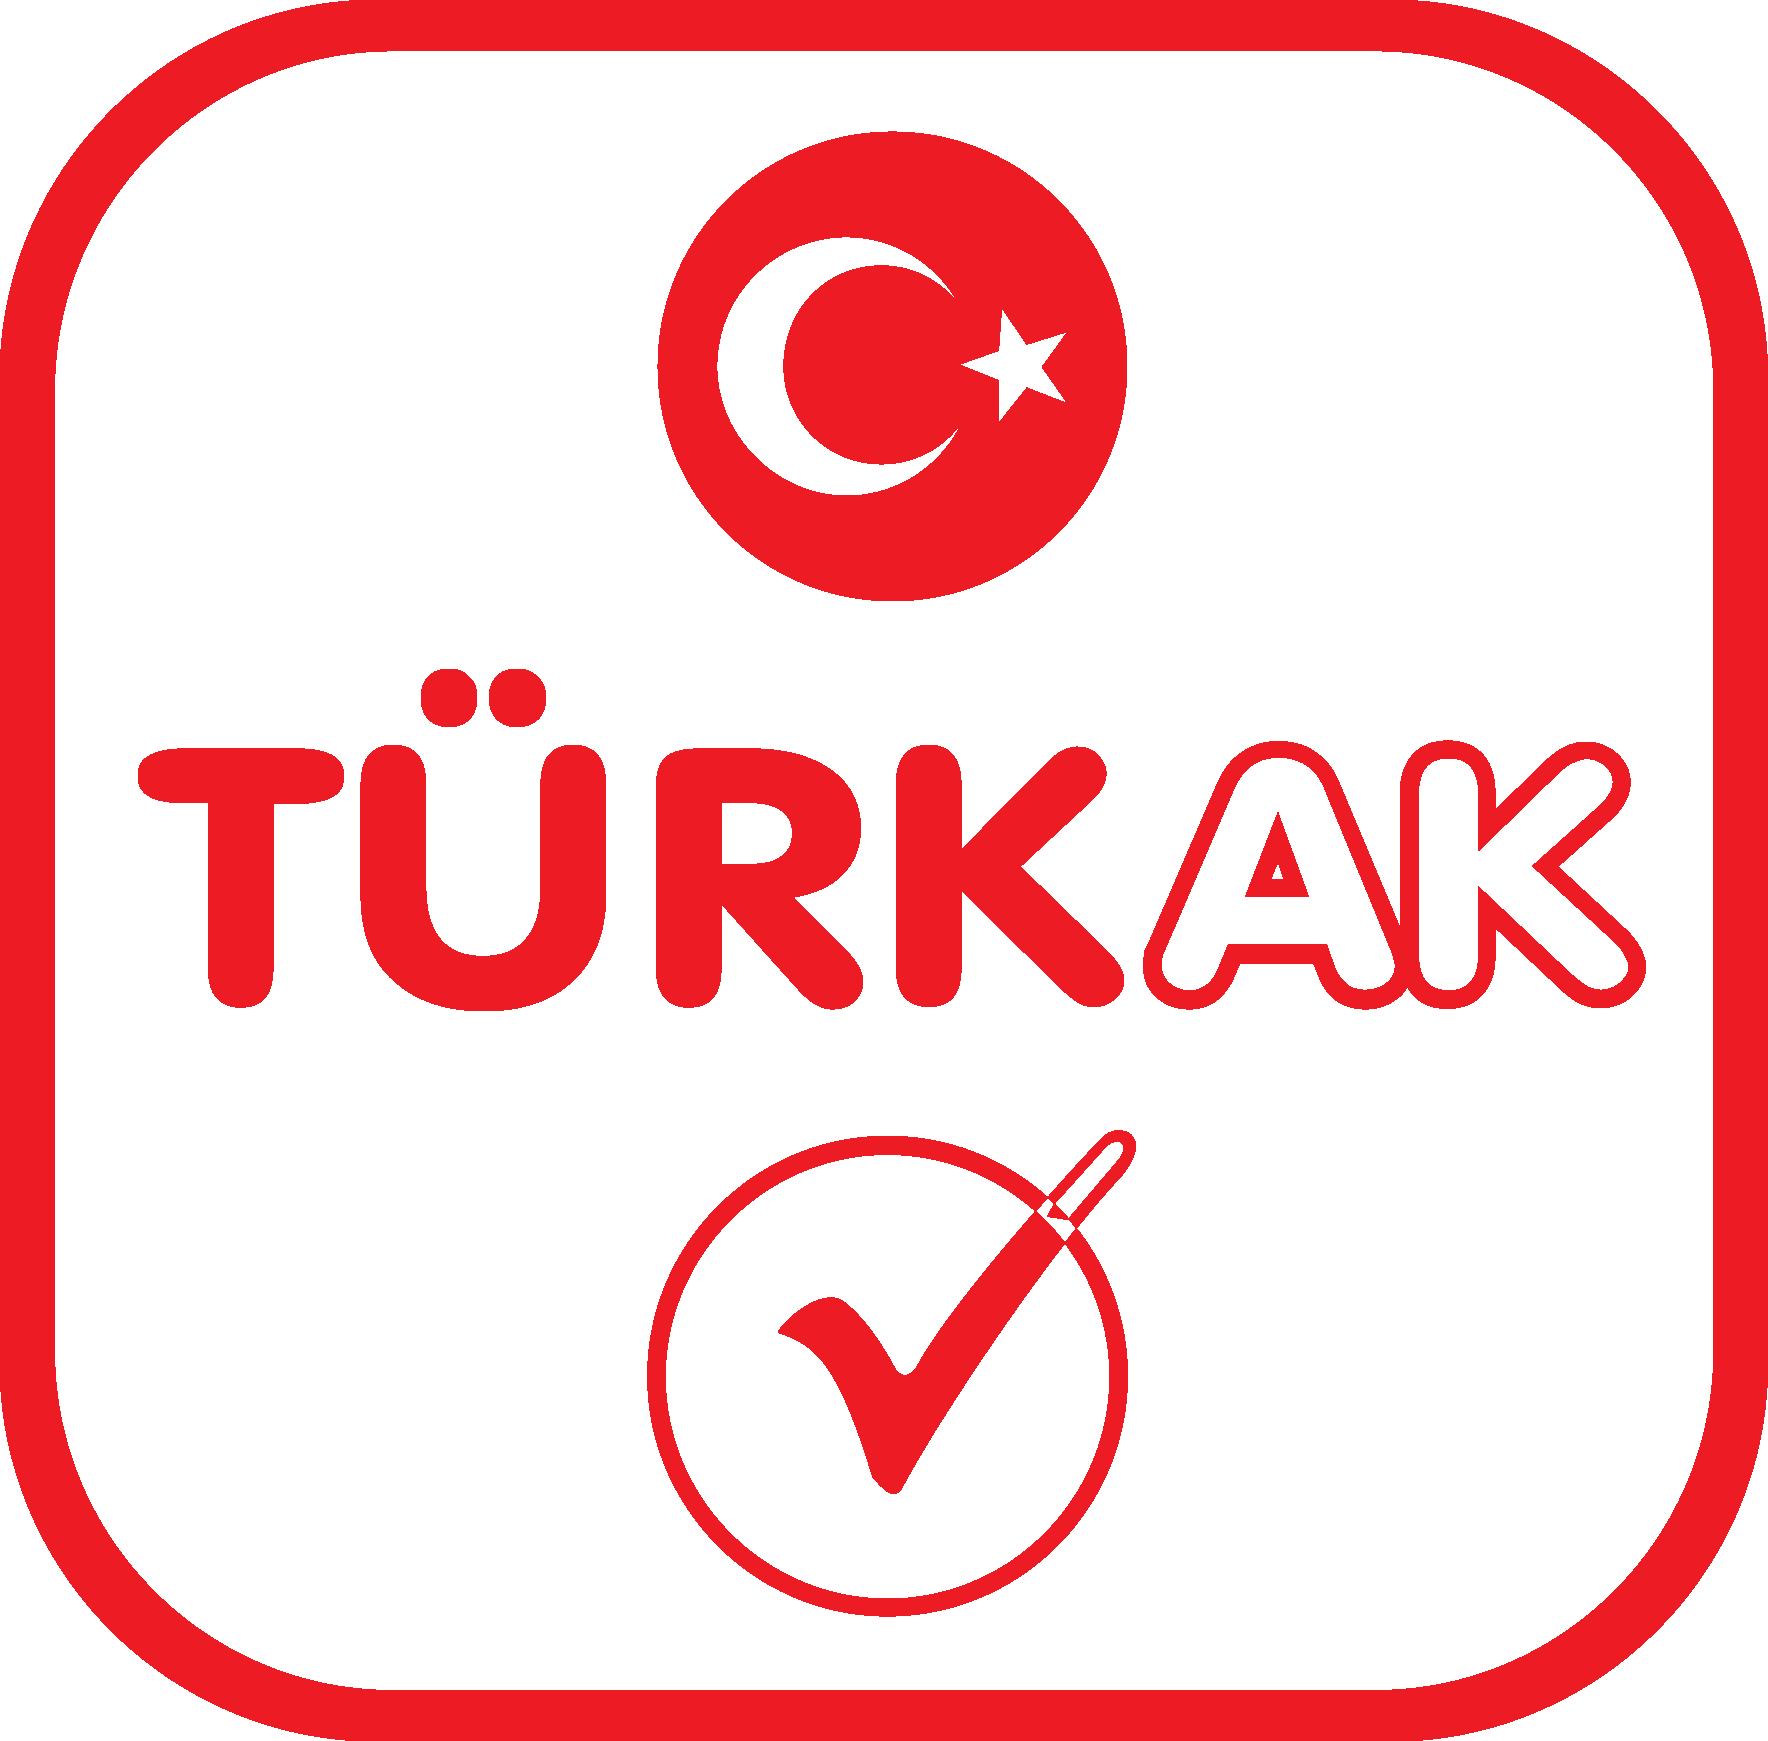 TÜRKAK - Türk Akreditasyon Kurumu Logo